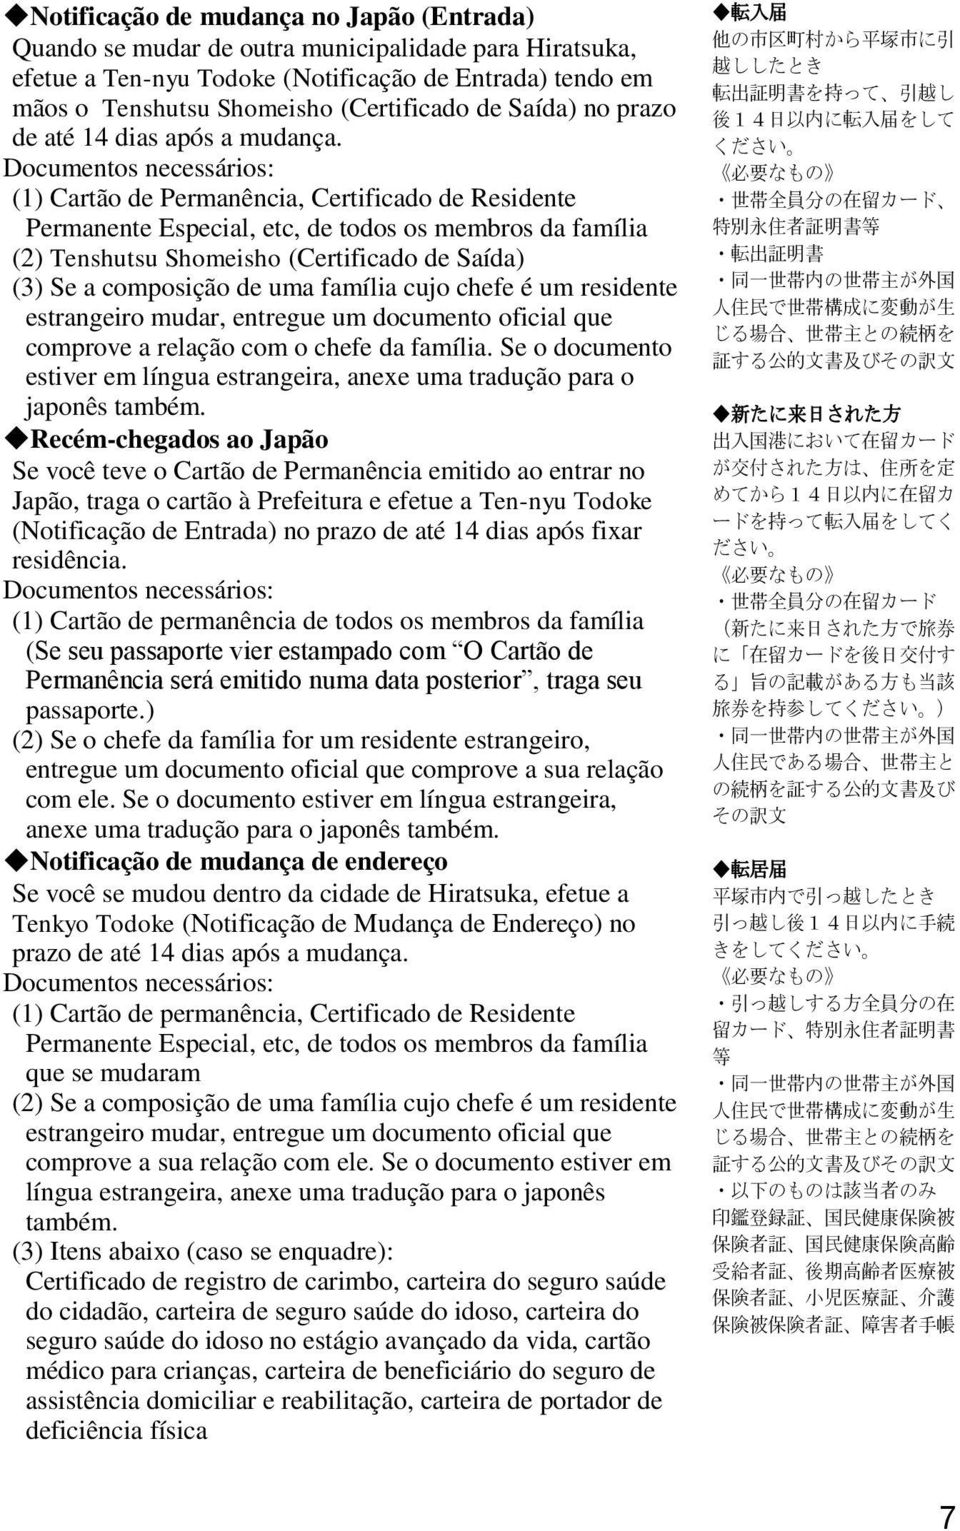 Documentos necessários: (1) Cartão de Permanência, Certificado de Residente Permanente Especial, etc, de todos os membros da família (2) Tenshutsu Shomeisho (Certificado de Saída) (3) Se a composição